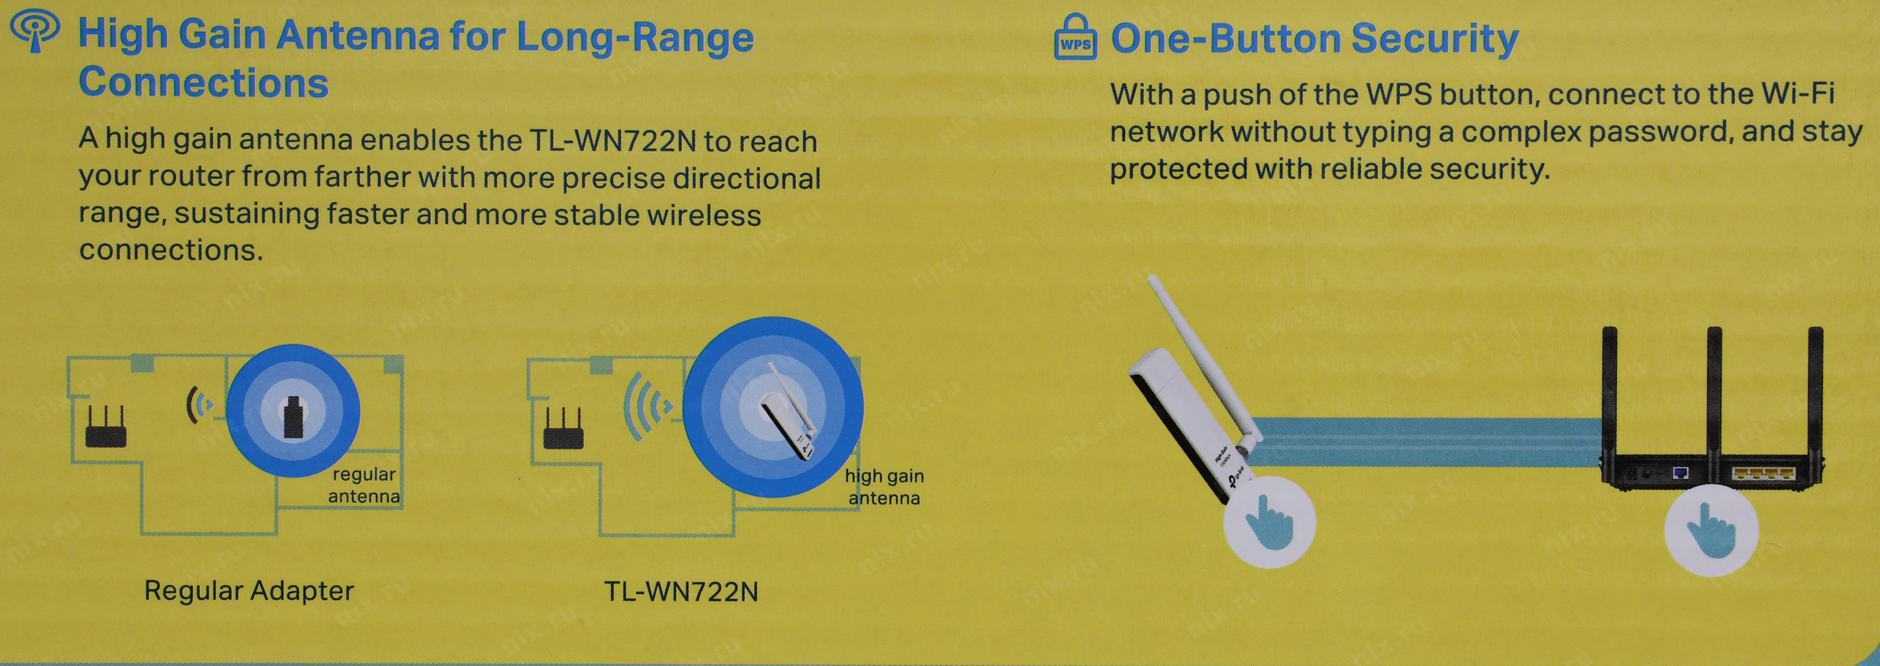 Можно ли роутер использовать как wi-fi адаптер для приема сигнала